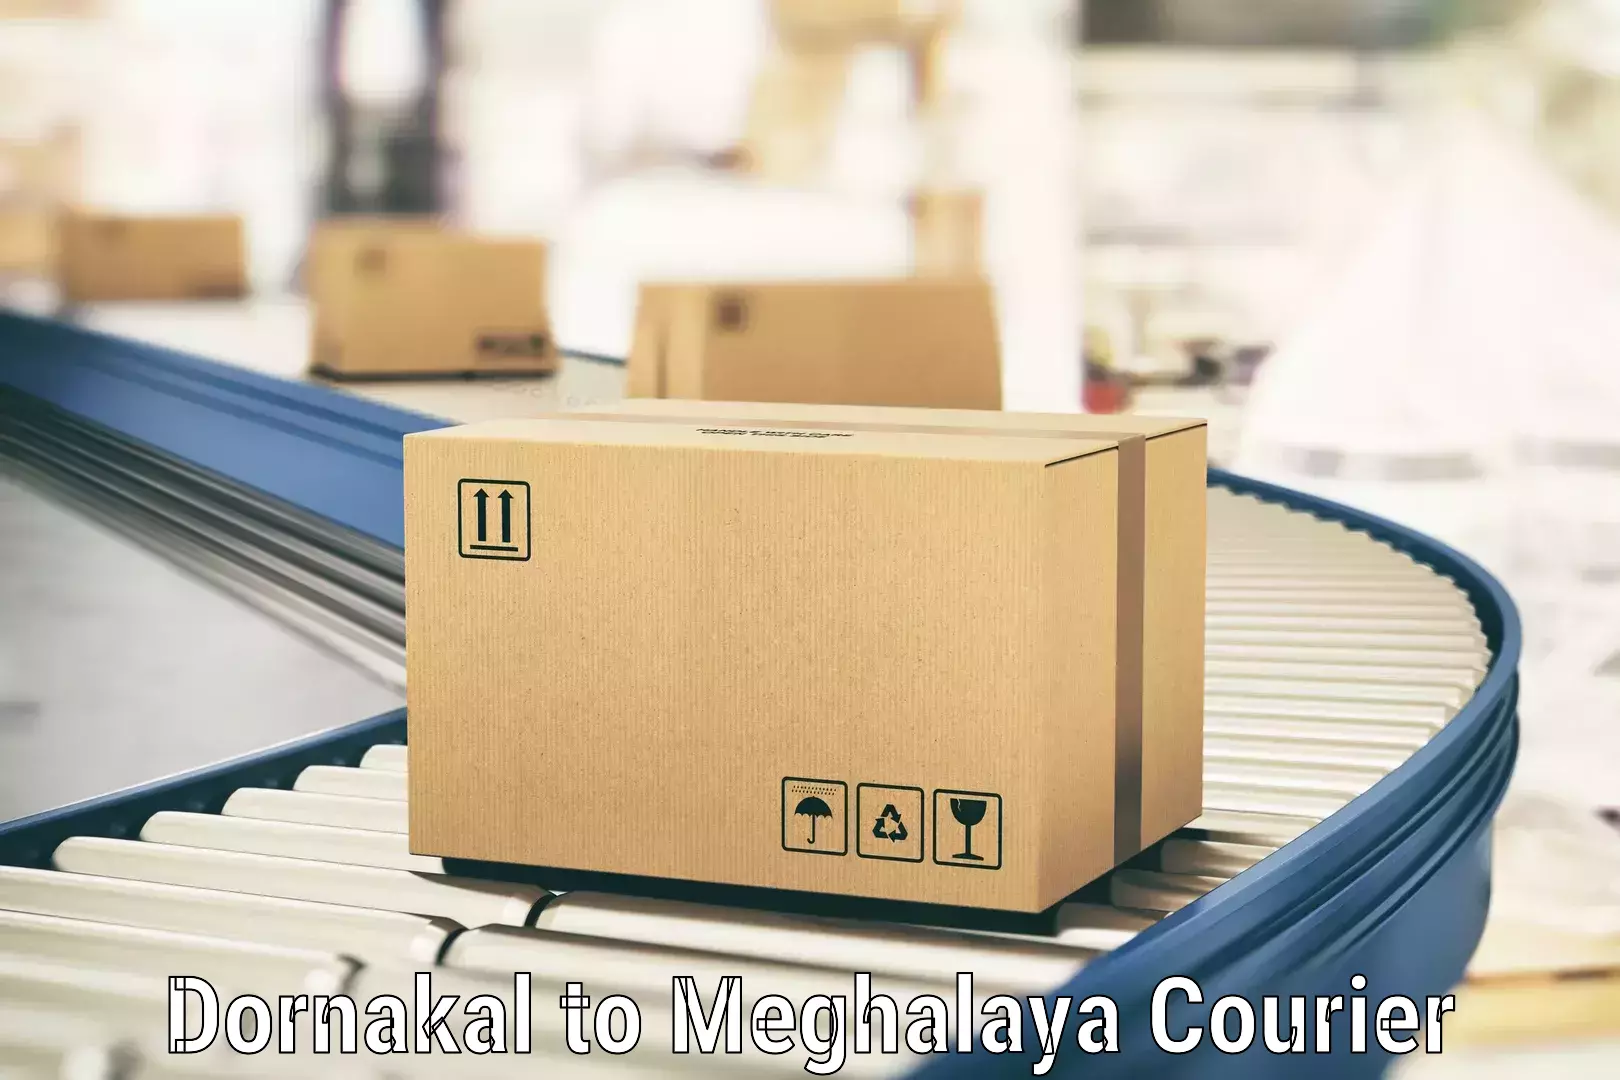 Custom courier packaging in Dornakal to Meghalaya